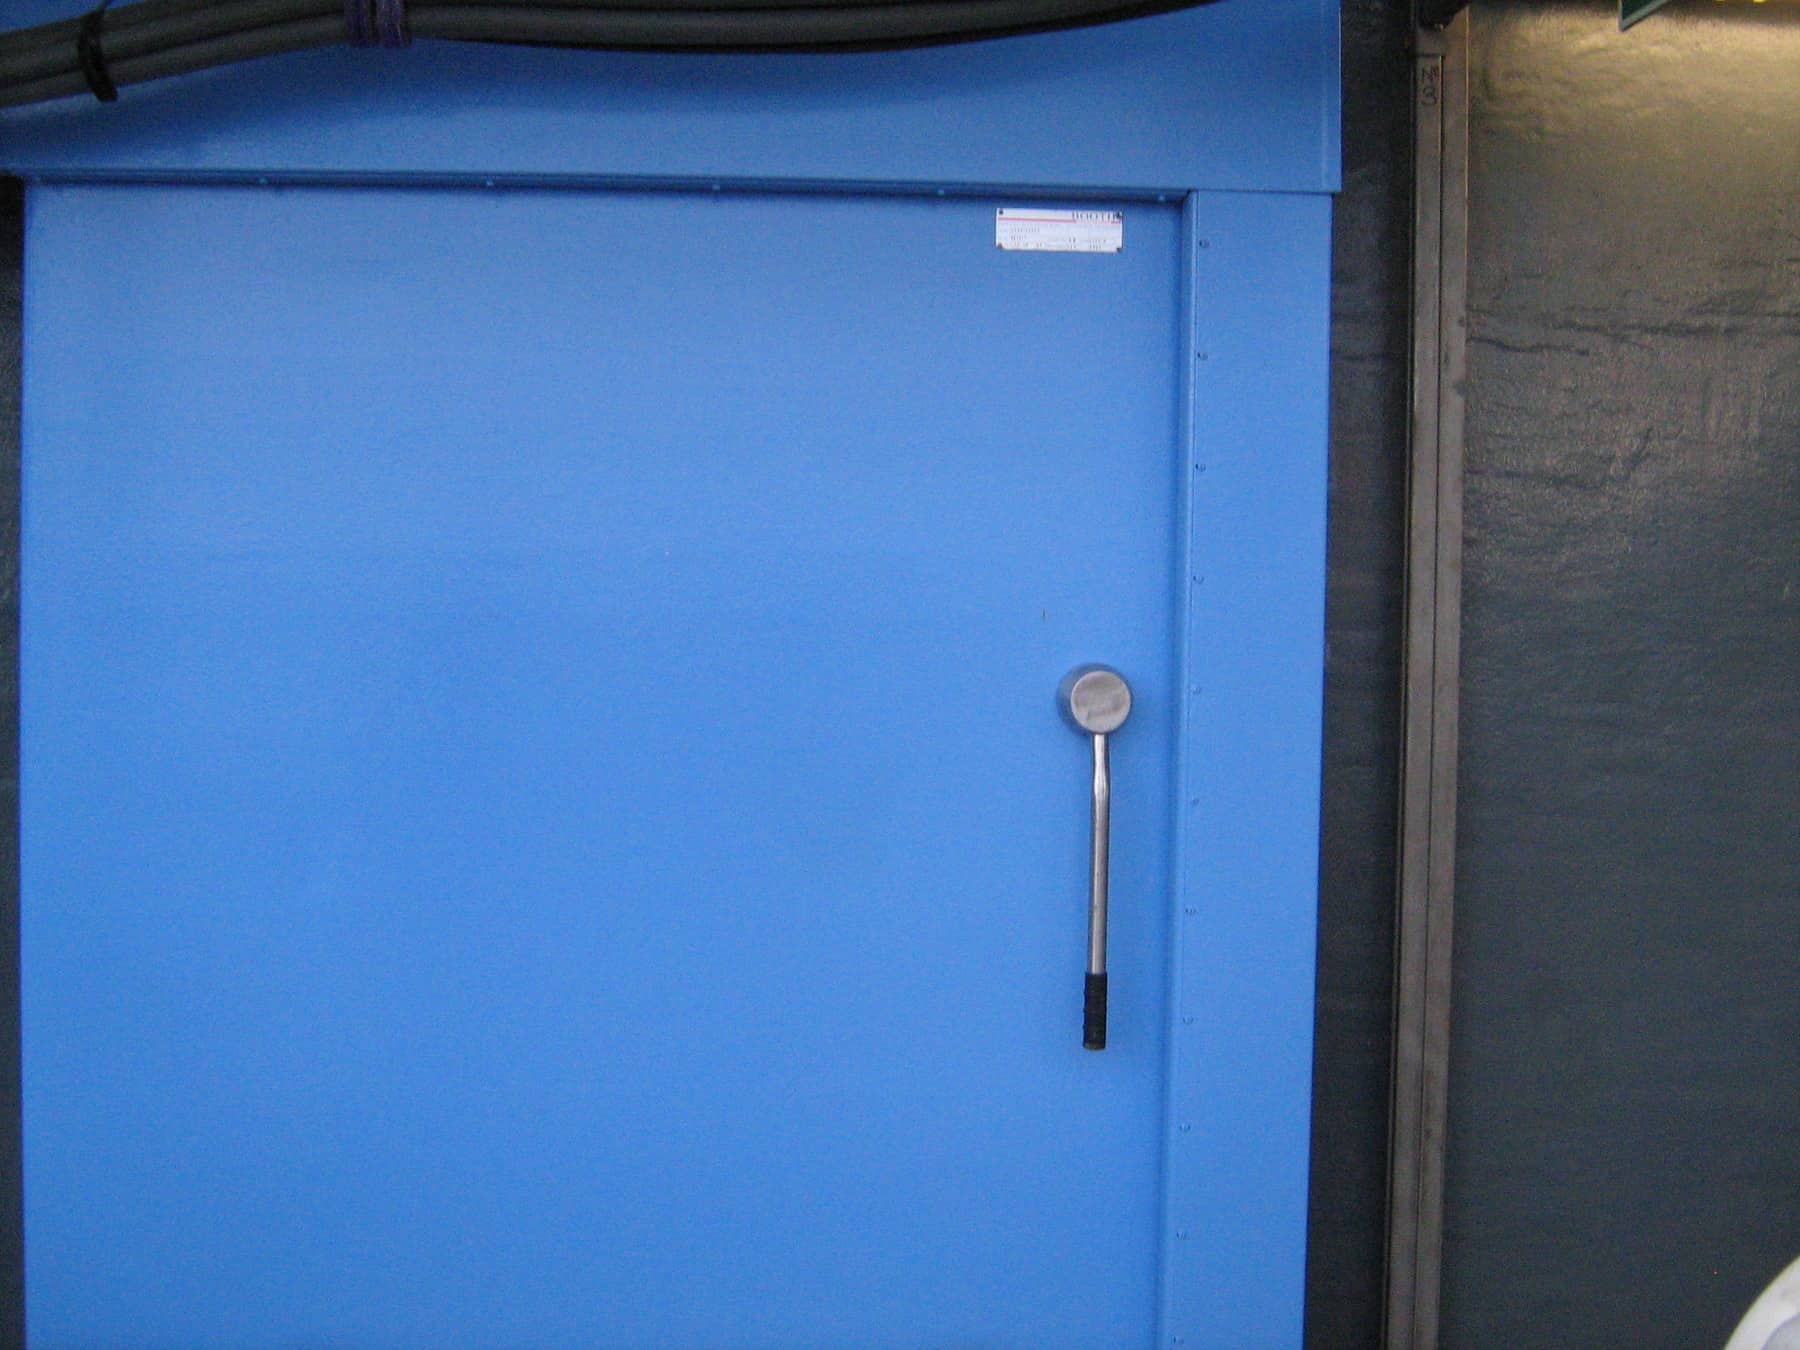 external door on offshore platform painted in blue